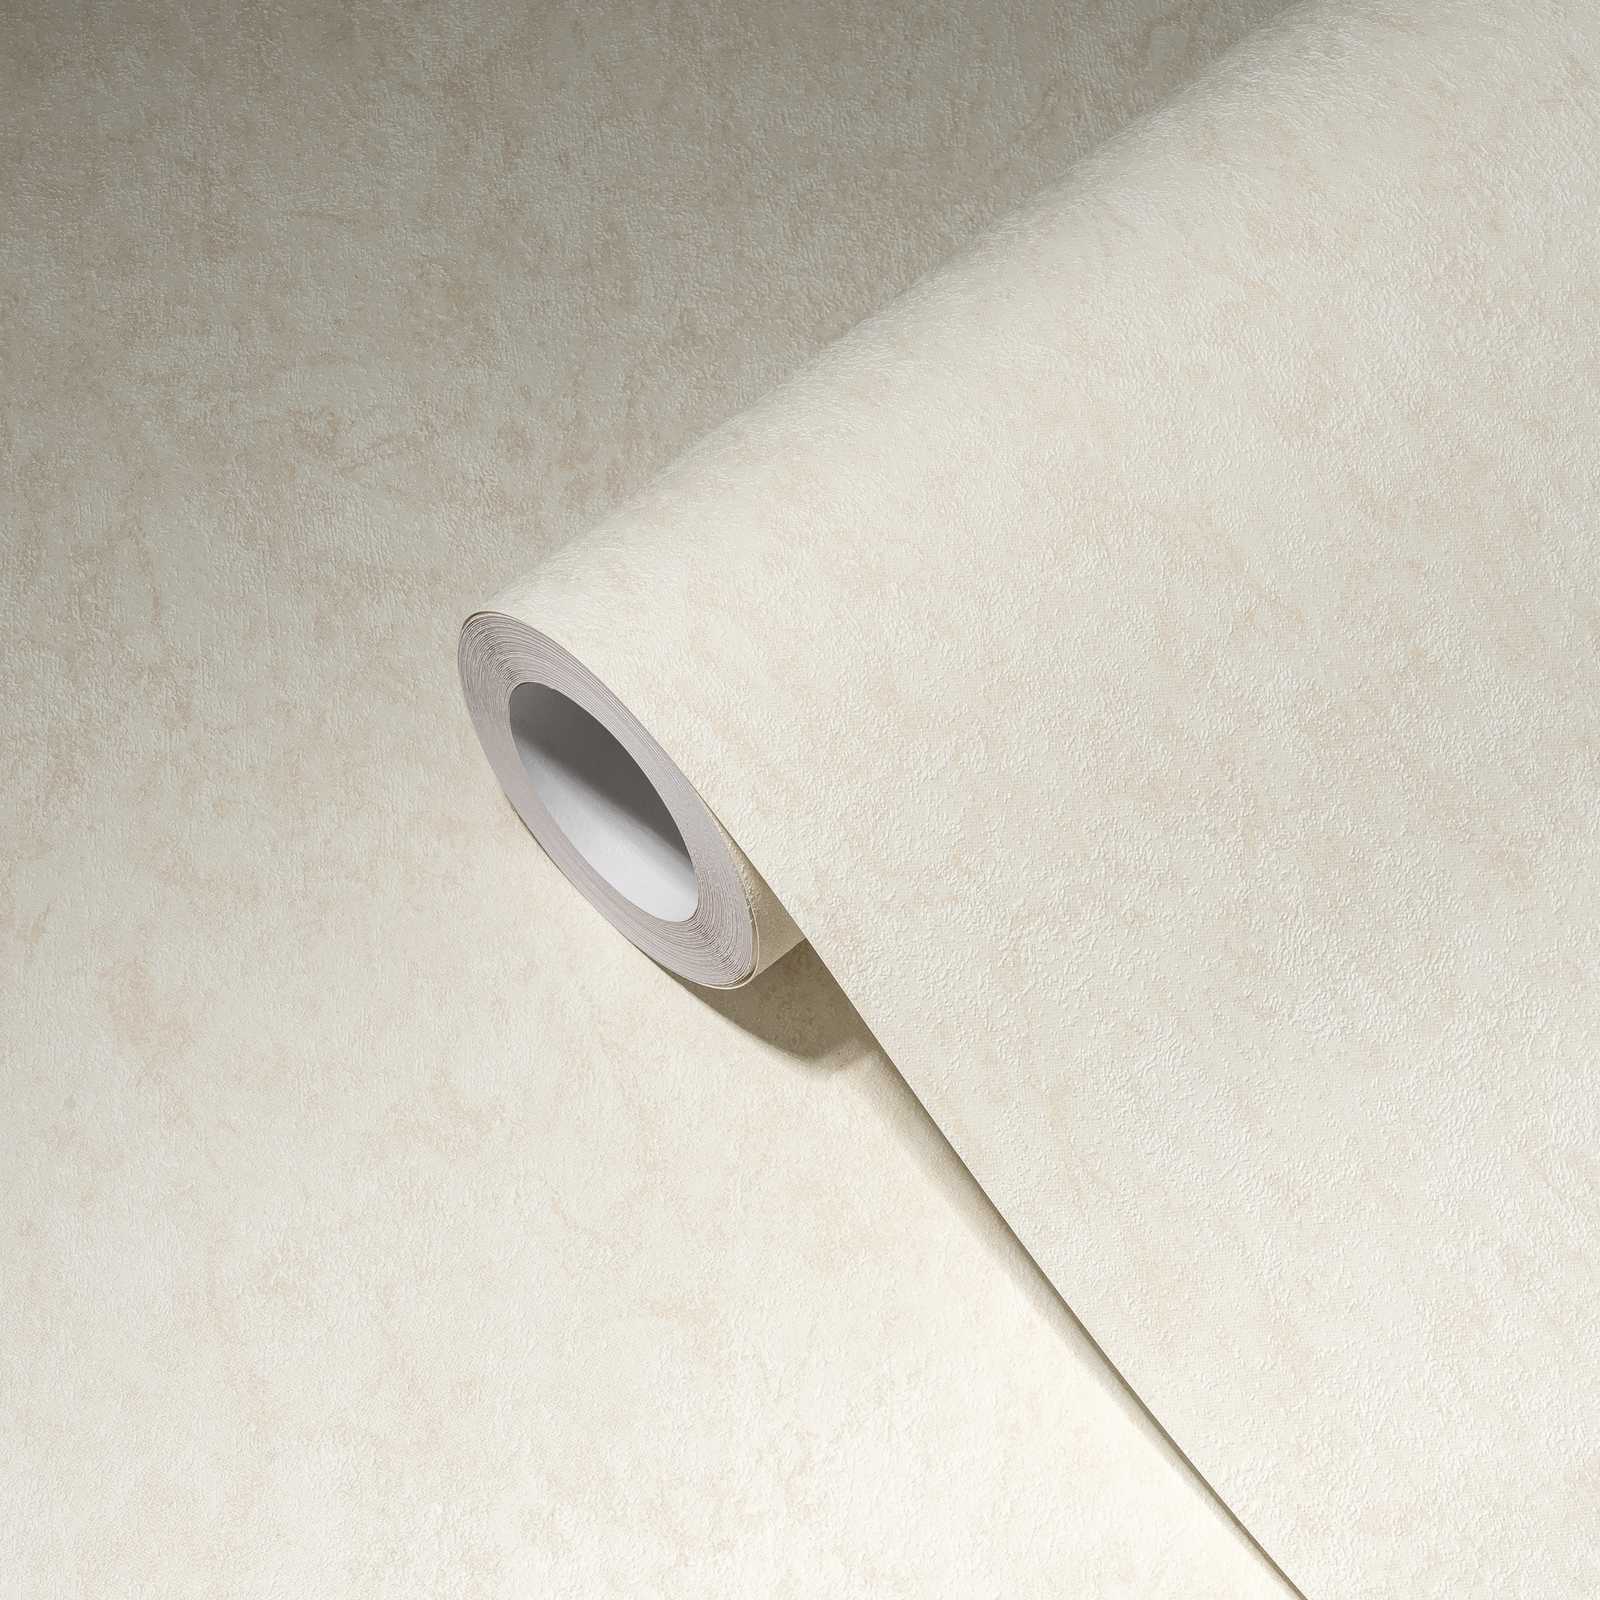             Papier peint uni avec effet structuré & design chiné - crème
        